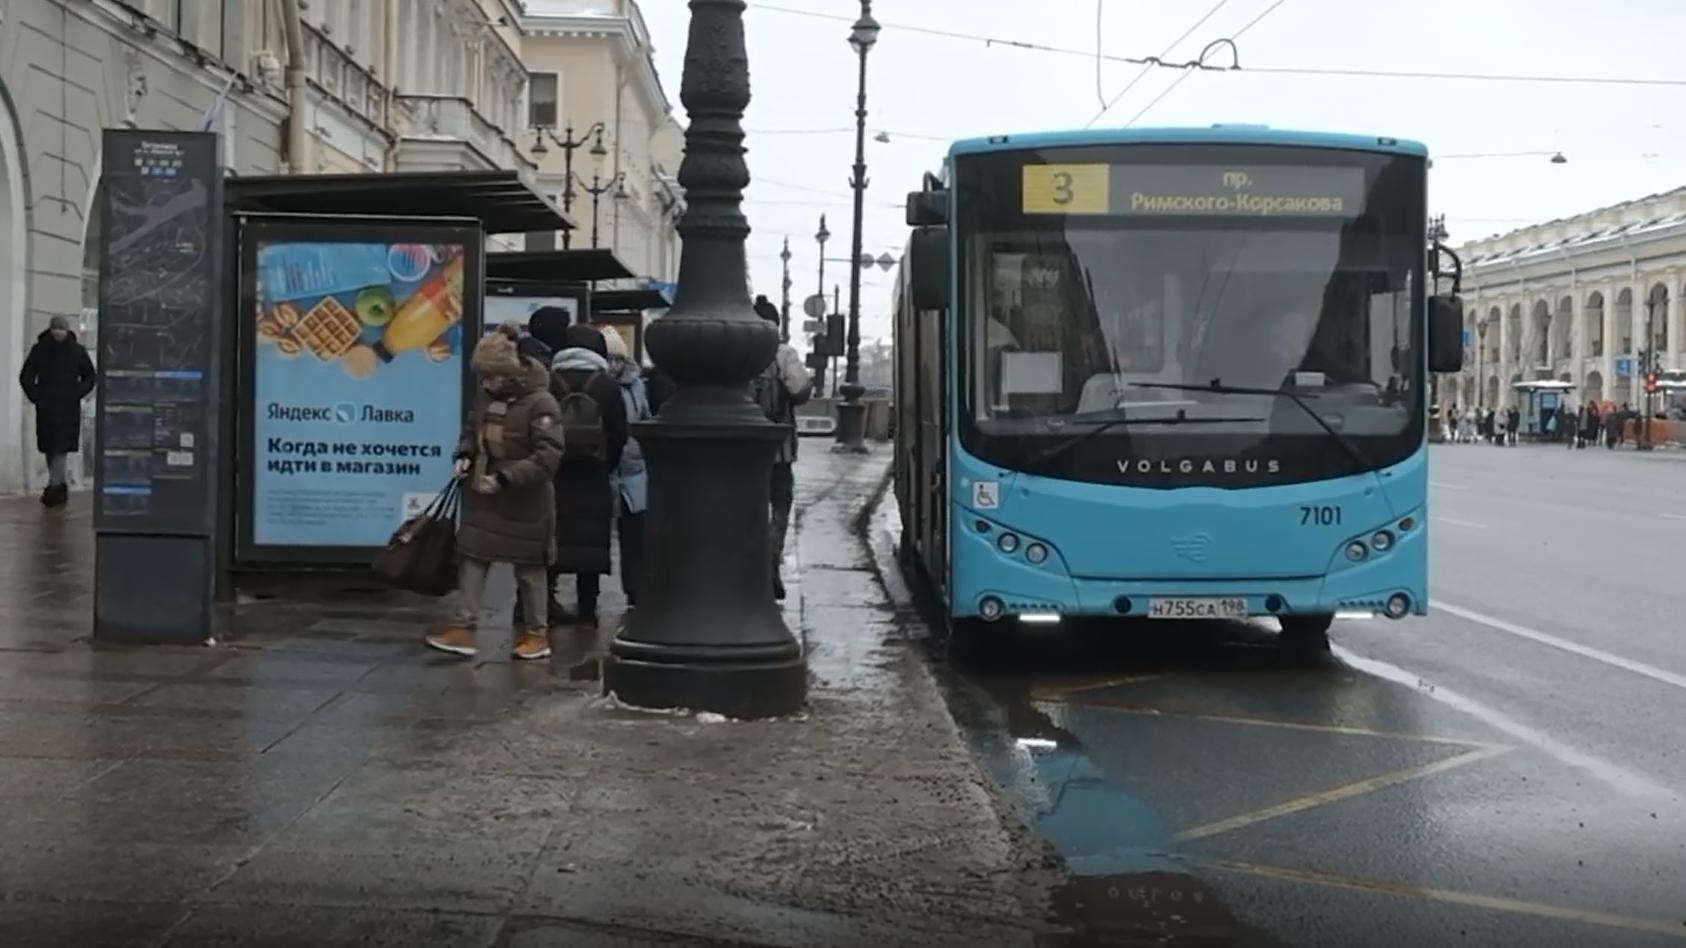 Когда 49 автобус. Волгабас автобус. Автобусная компания СПБ. Автобусы в Питере. Лазурный автобус СПБ.